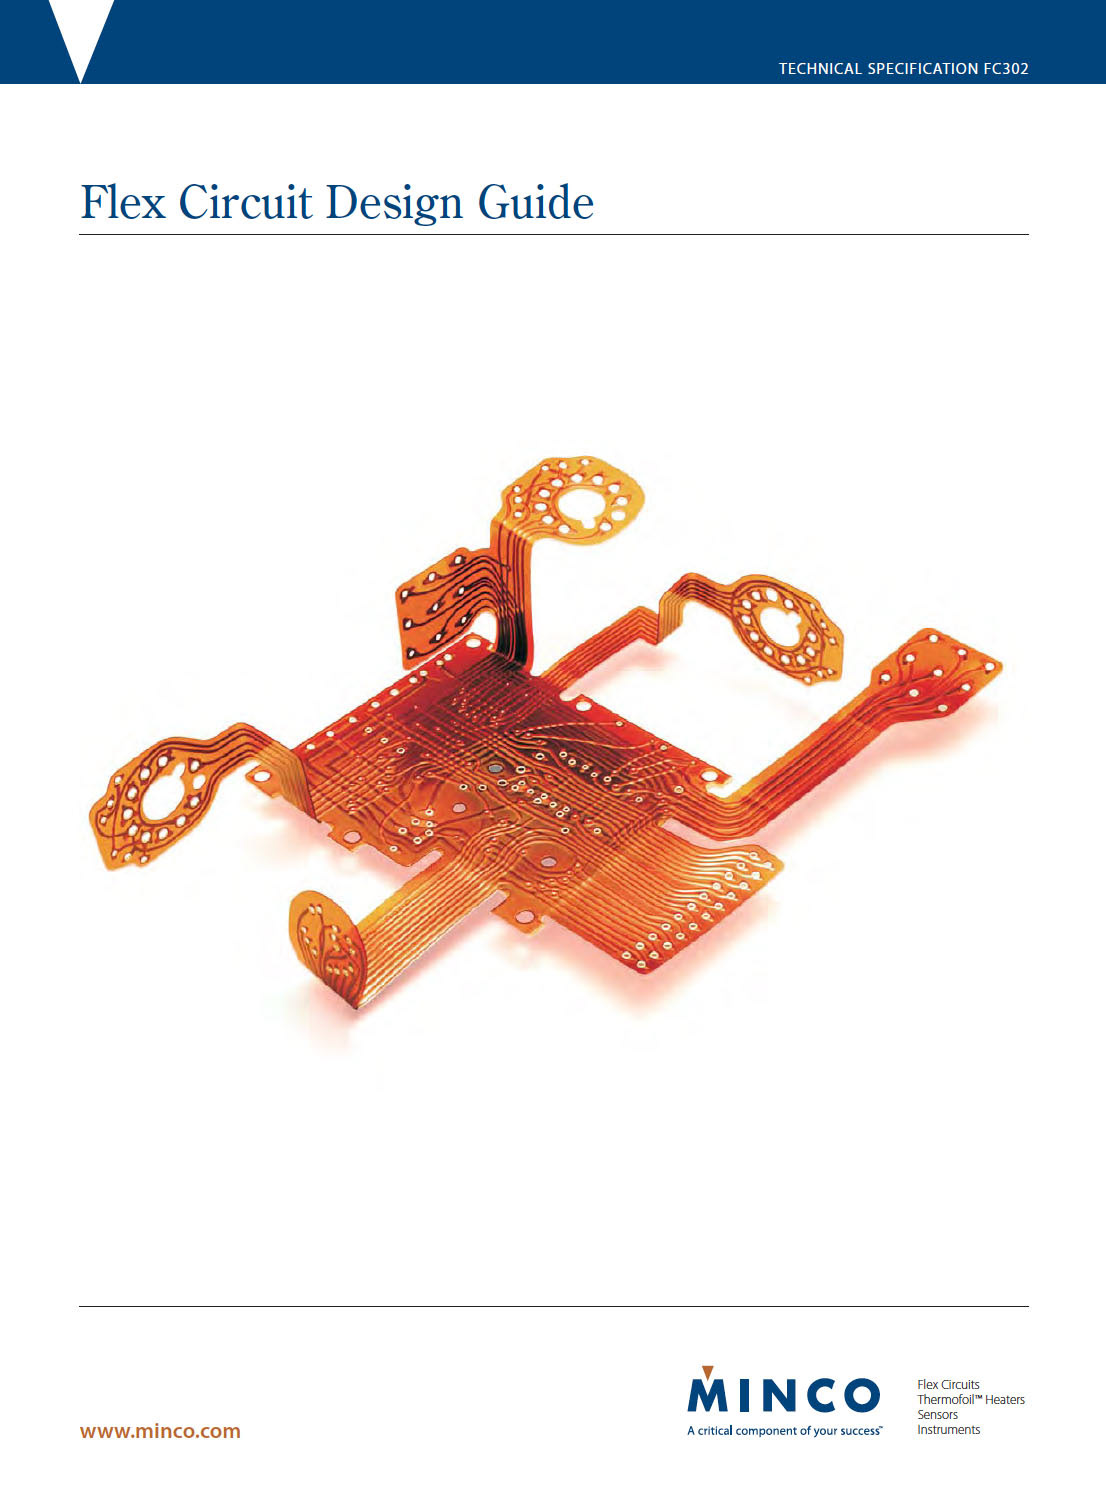 altium designer manual pdf